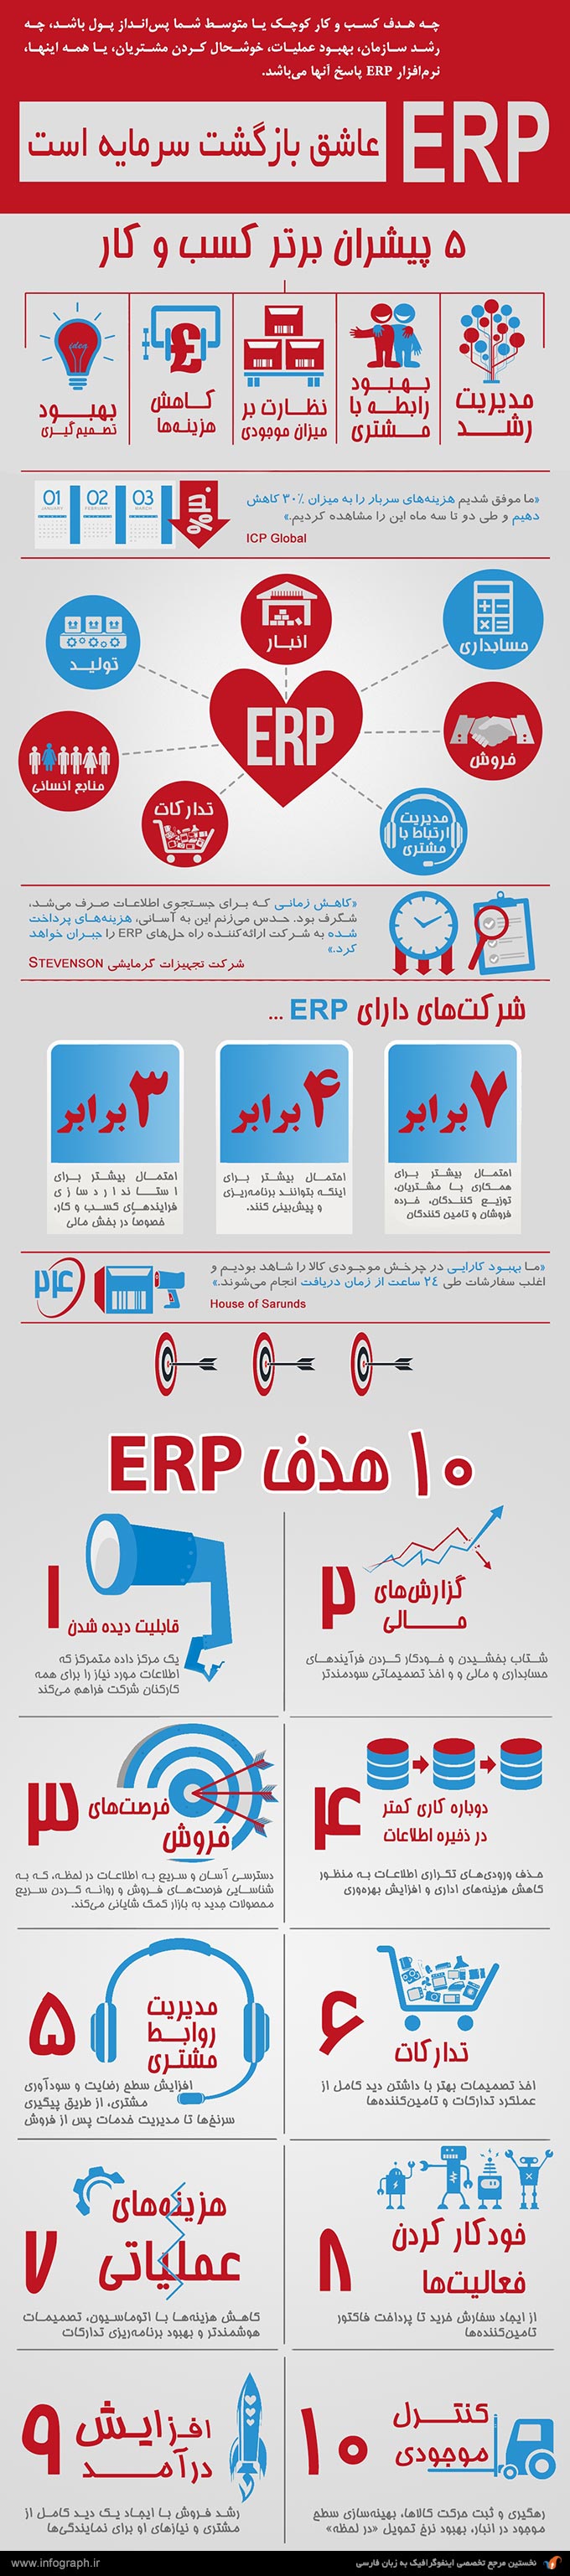 اینفوگرافیک بازگشت سرمایه توسط ERP